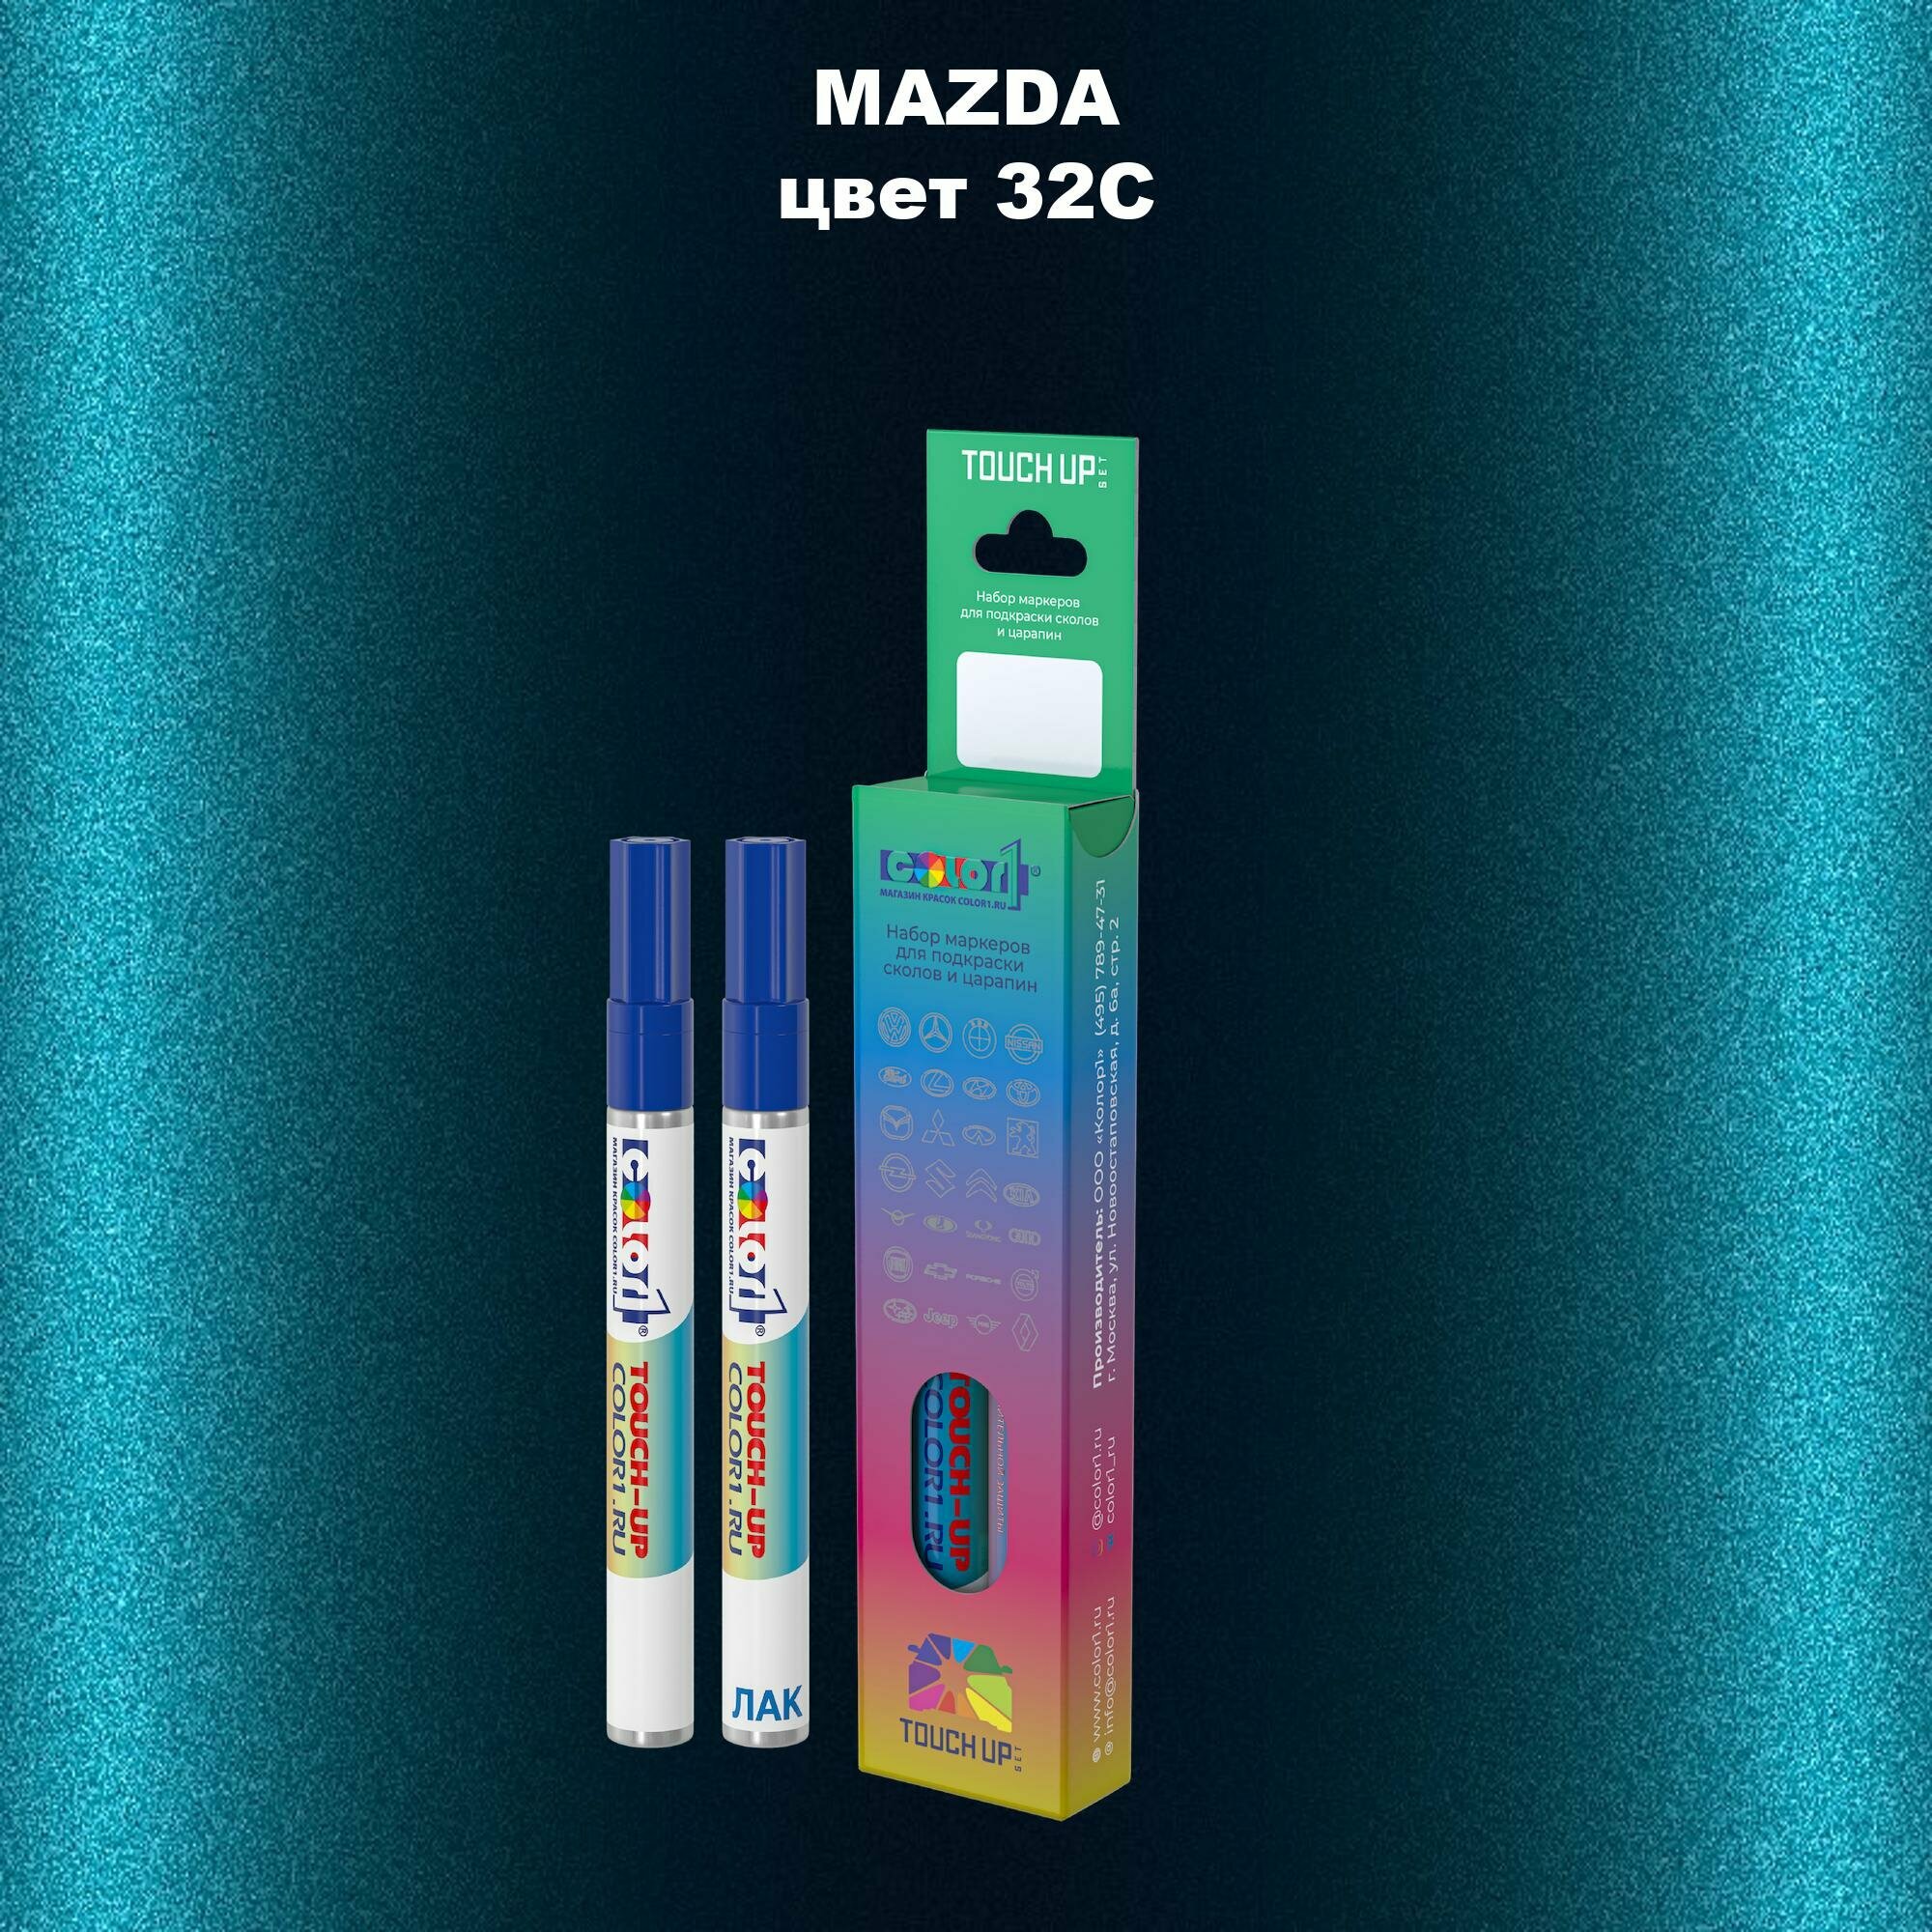 Набор маркеров (маркер с краской и маркер с лаком) для закраски сколов и царапин на автомобиле MAZDA, цвет 32C - PHANTOM BLUE